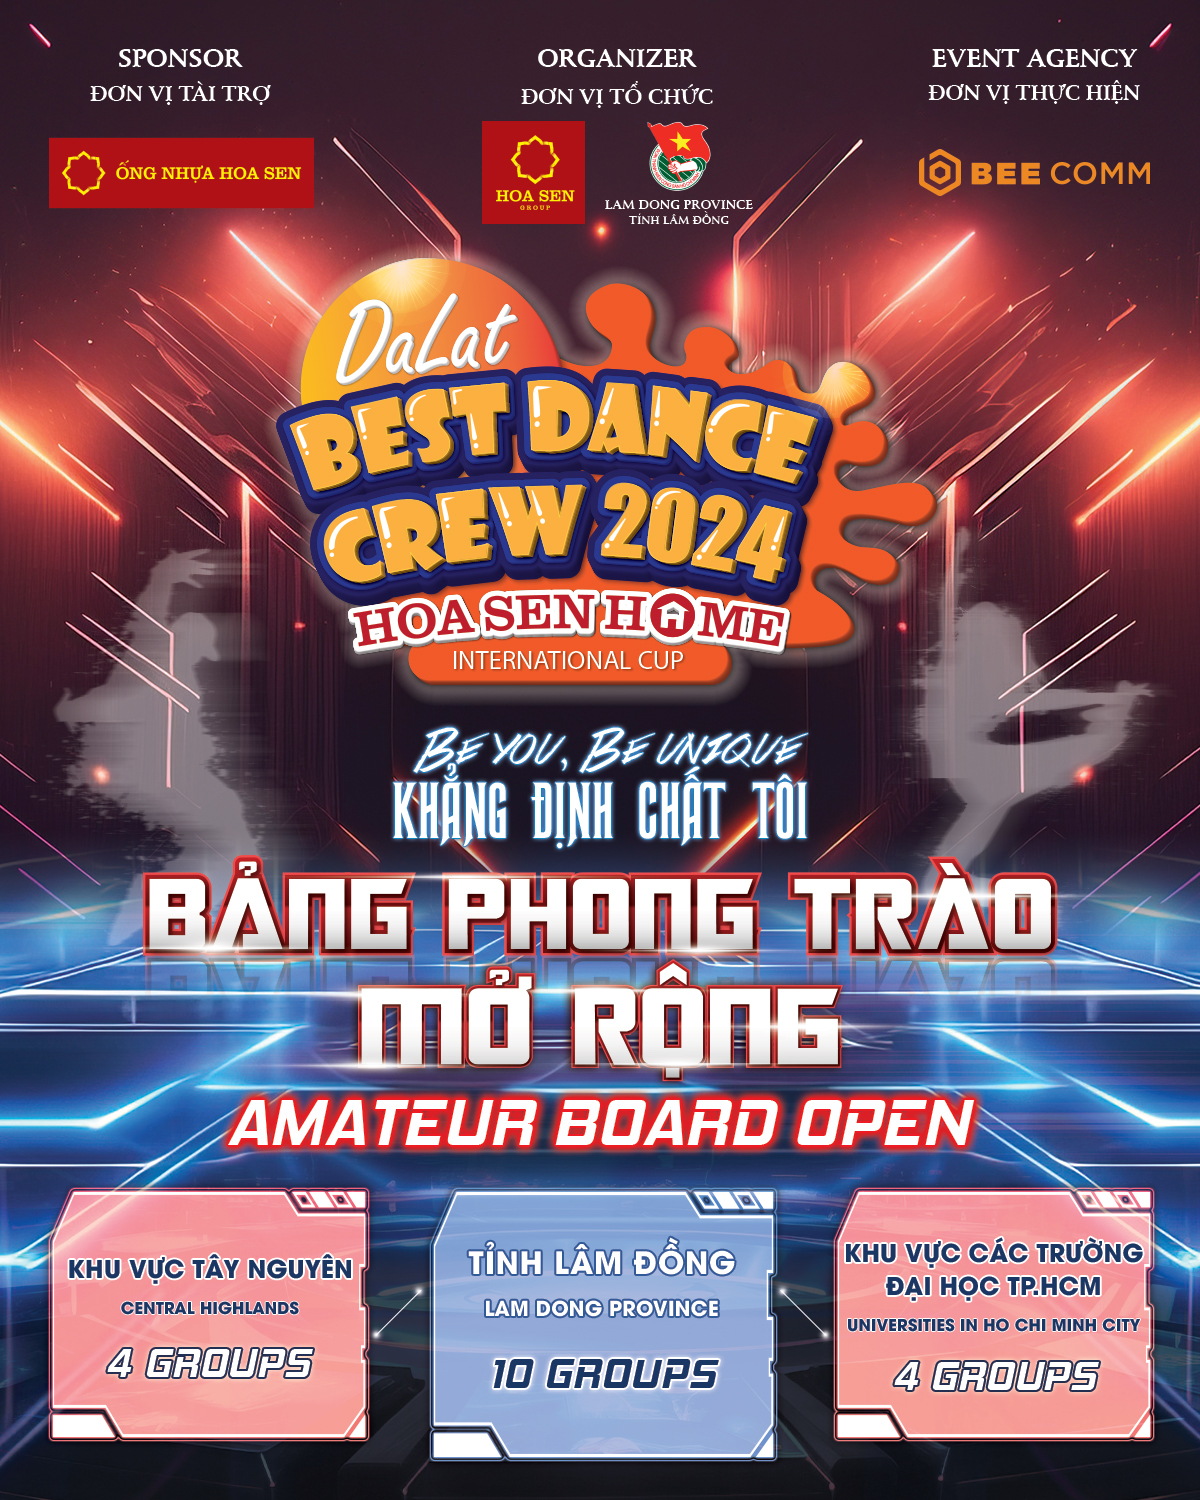 Bảng Phong trào Mở rộng Dalat Best Dance Crew 2024 - Hoa Sen Home International Cup Banner